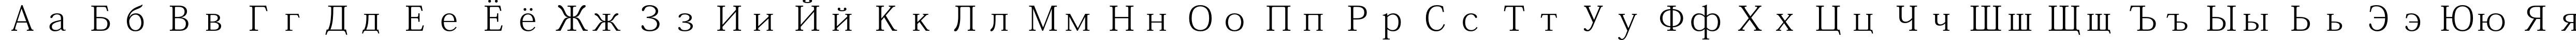 Пример написания русского алфавита шрифтом Adobe Fangsong Std R